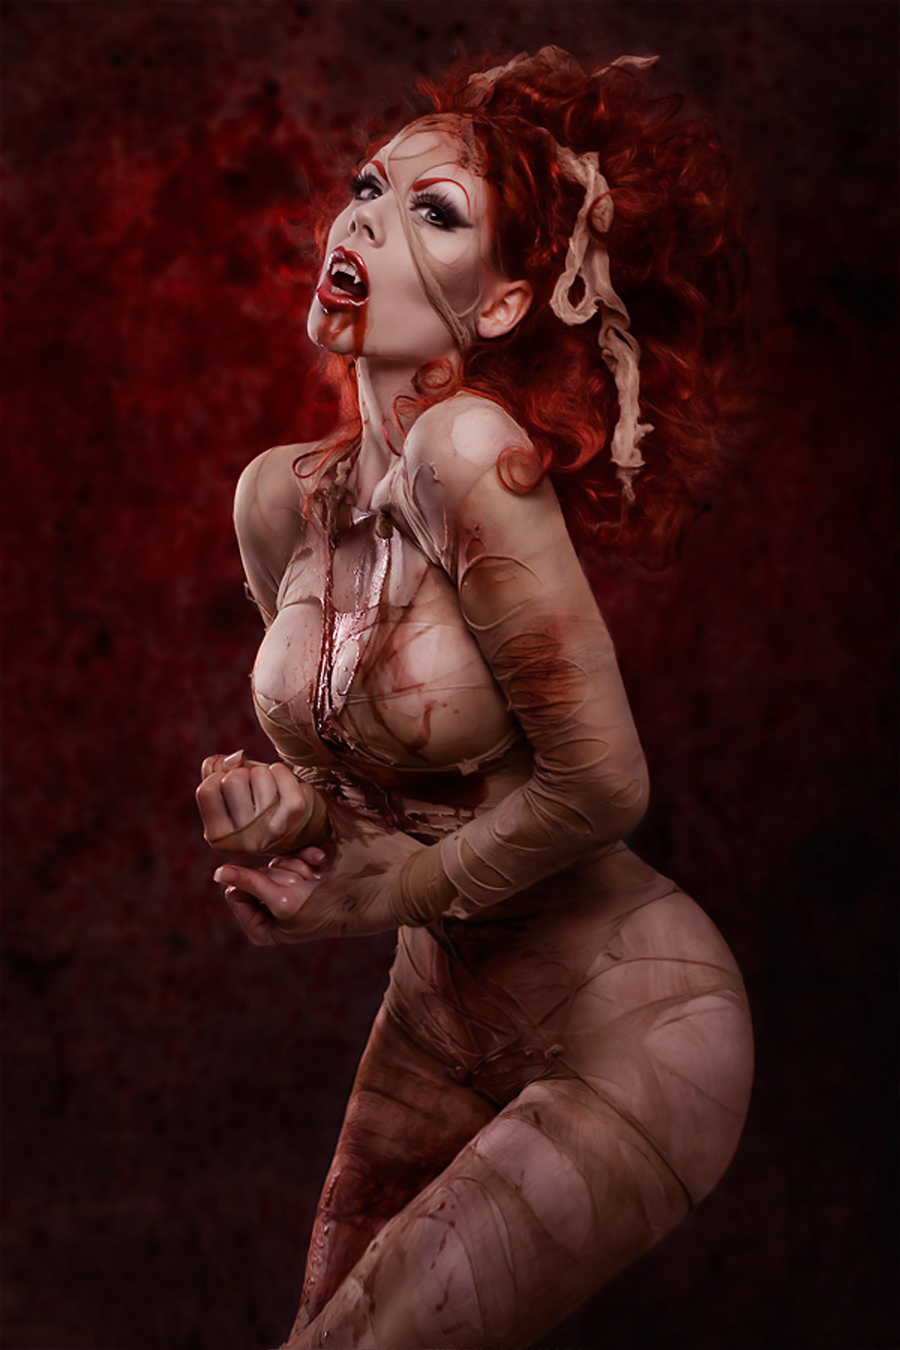 Naked vampire art porn images